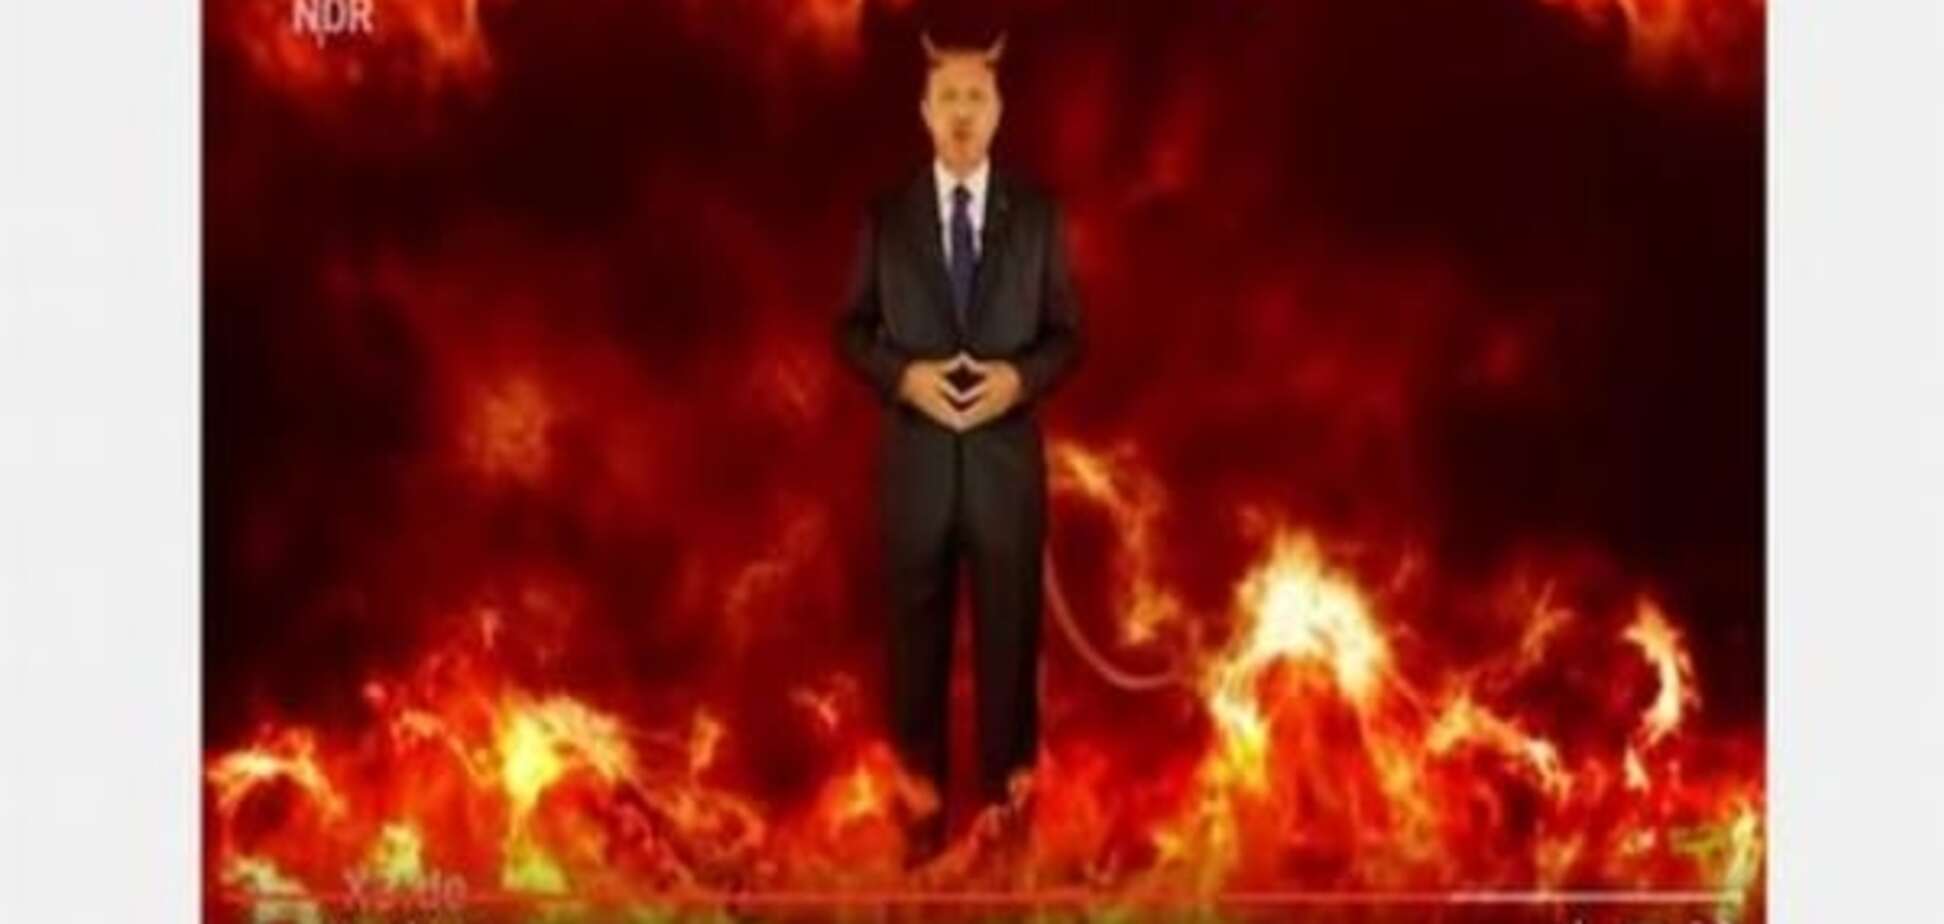 ЗМІ: МЗС Туреччини викликало посла ФРН через відео про Ердогана на німецькому ТБ